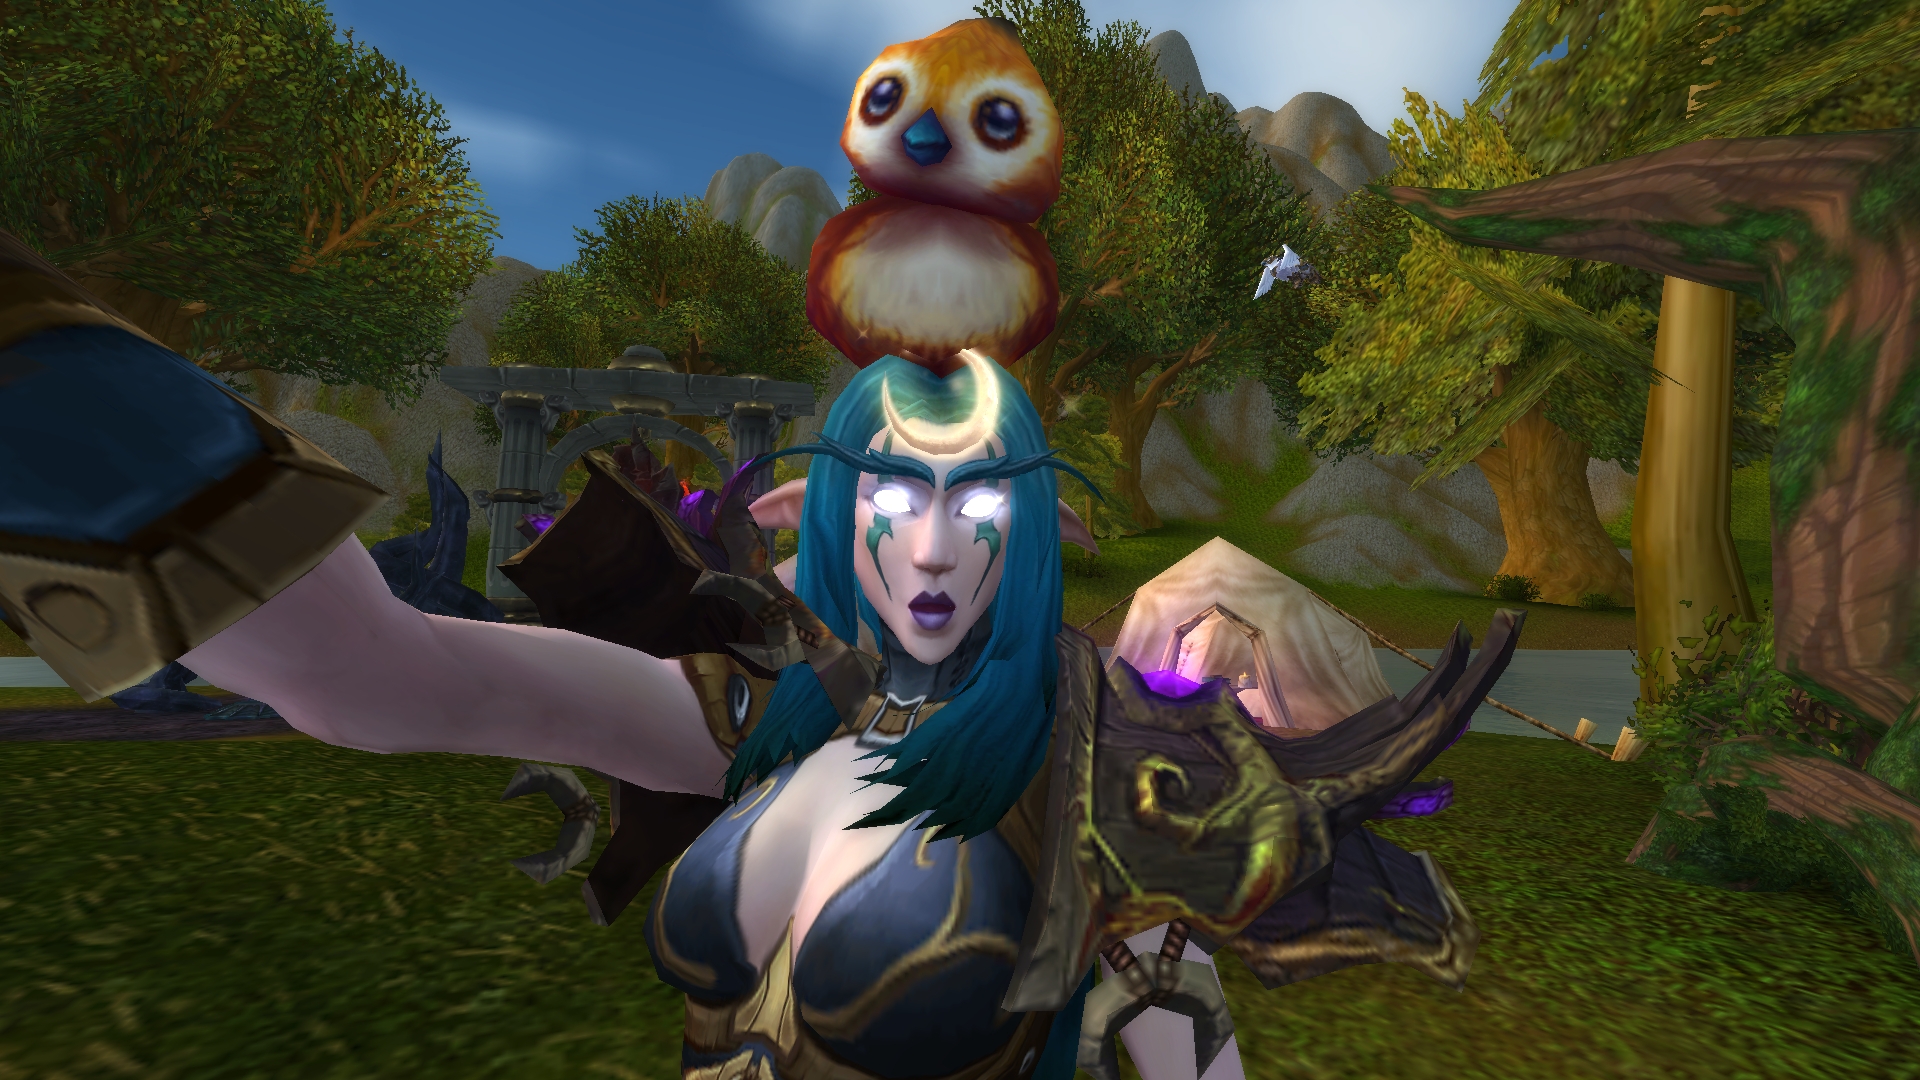 World of Warcraft selfie